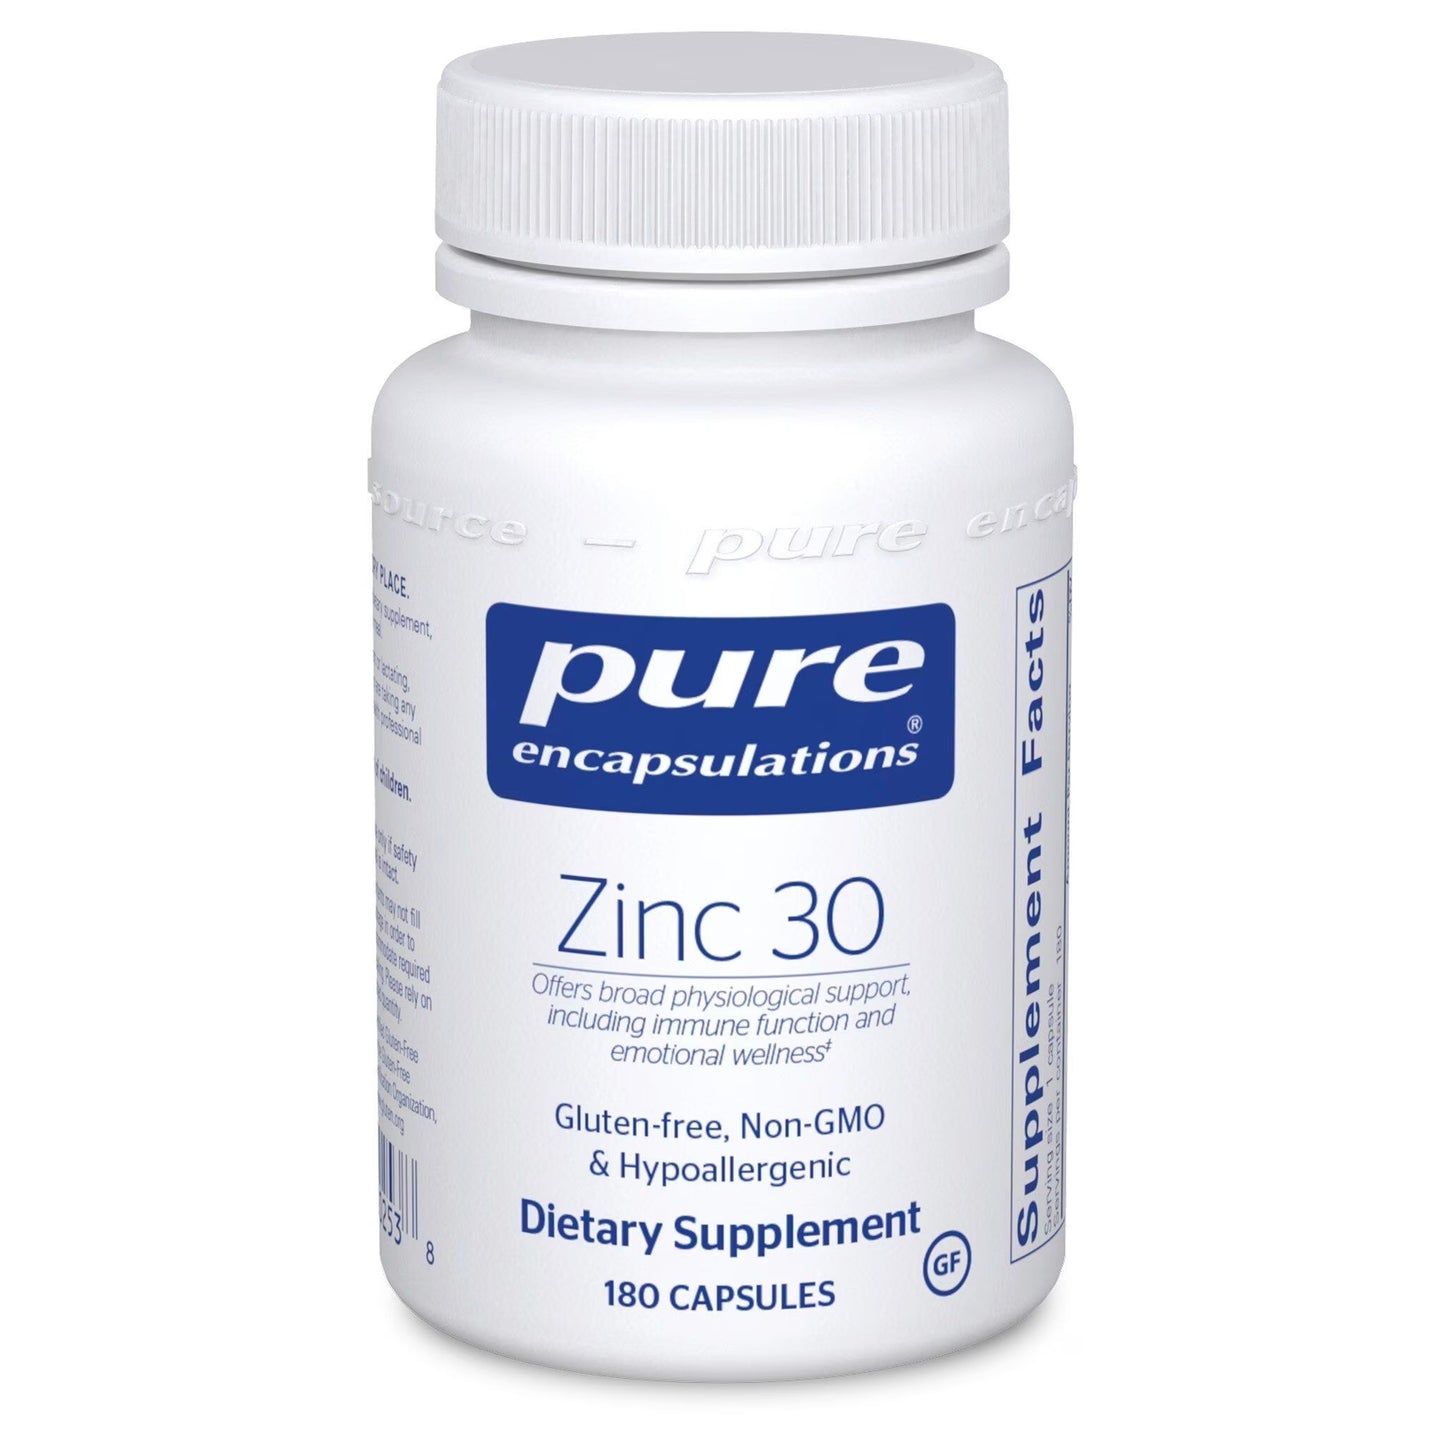 Pure Encapsulations - Zinc 30 (Zinc picolinate)